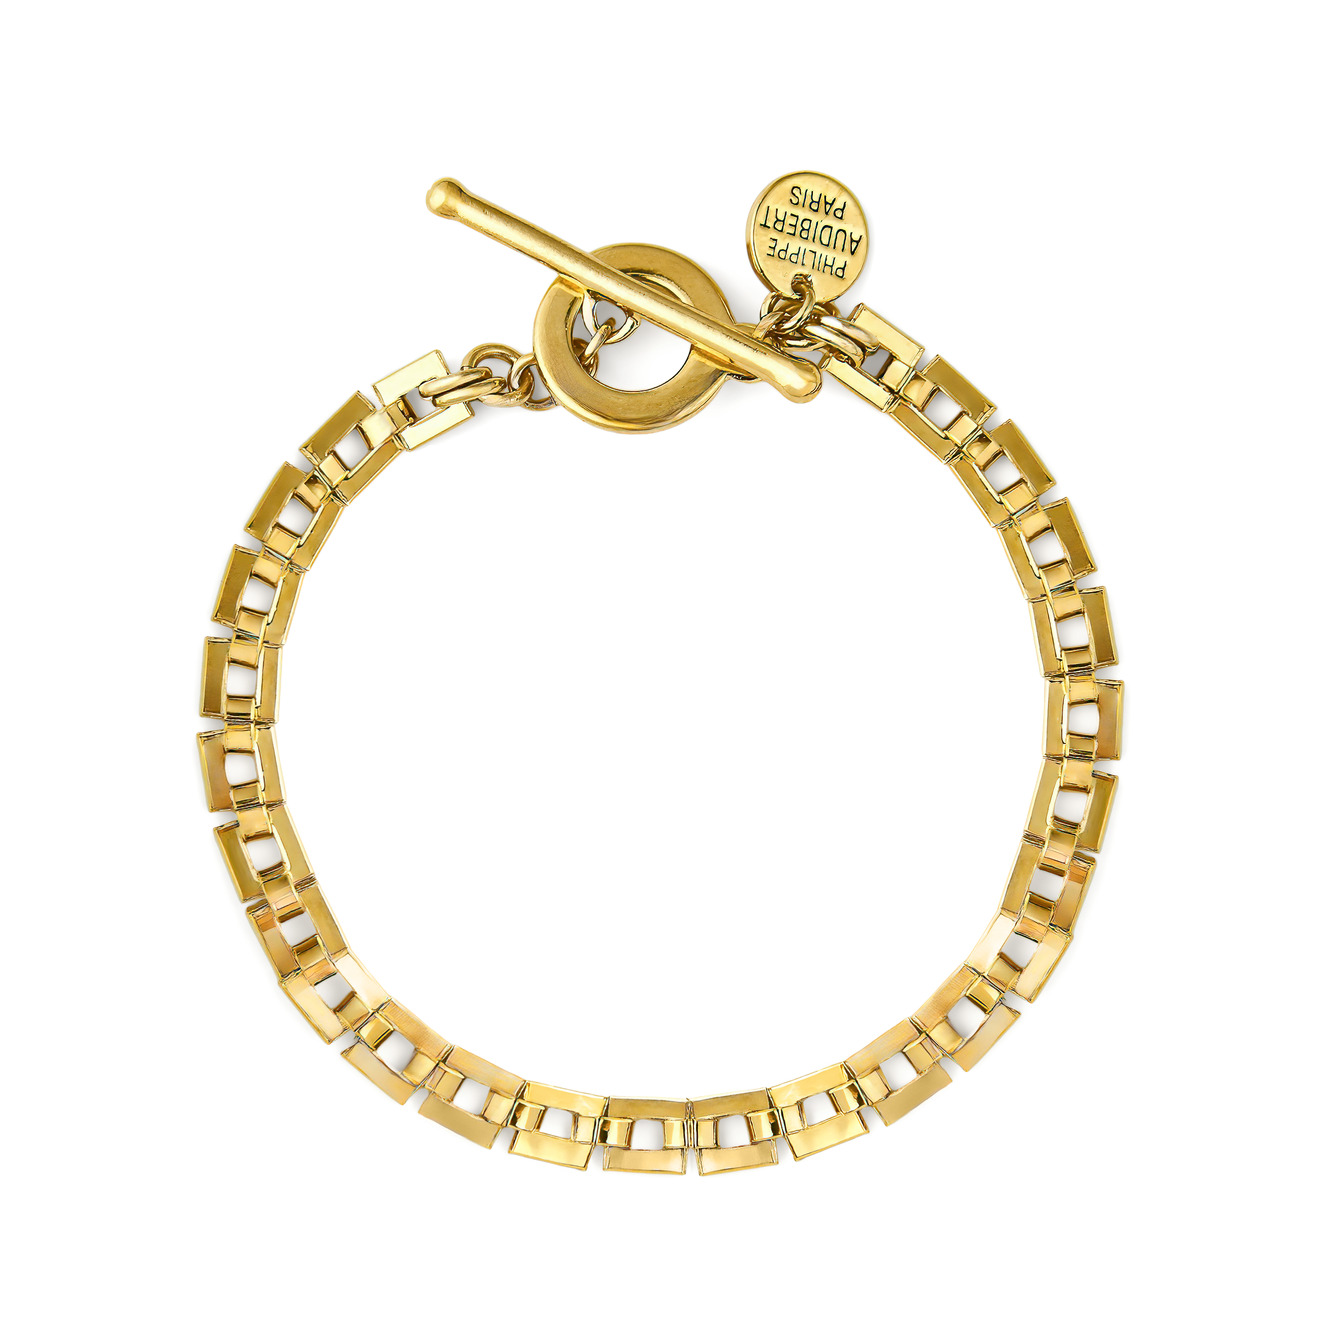 Philippe Audibert Позолоченный браслет-цепь Avner с квадратными звеньями philippe audibert биколорный браслет цепь claire